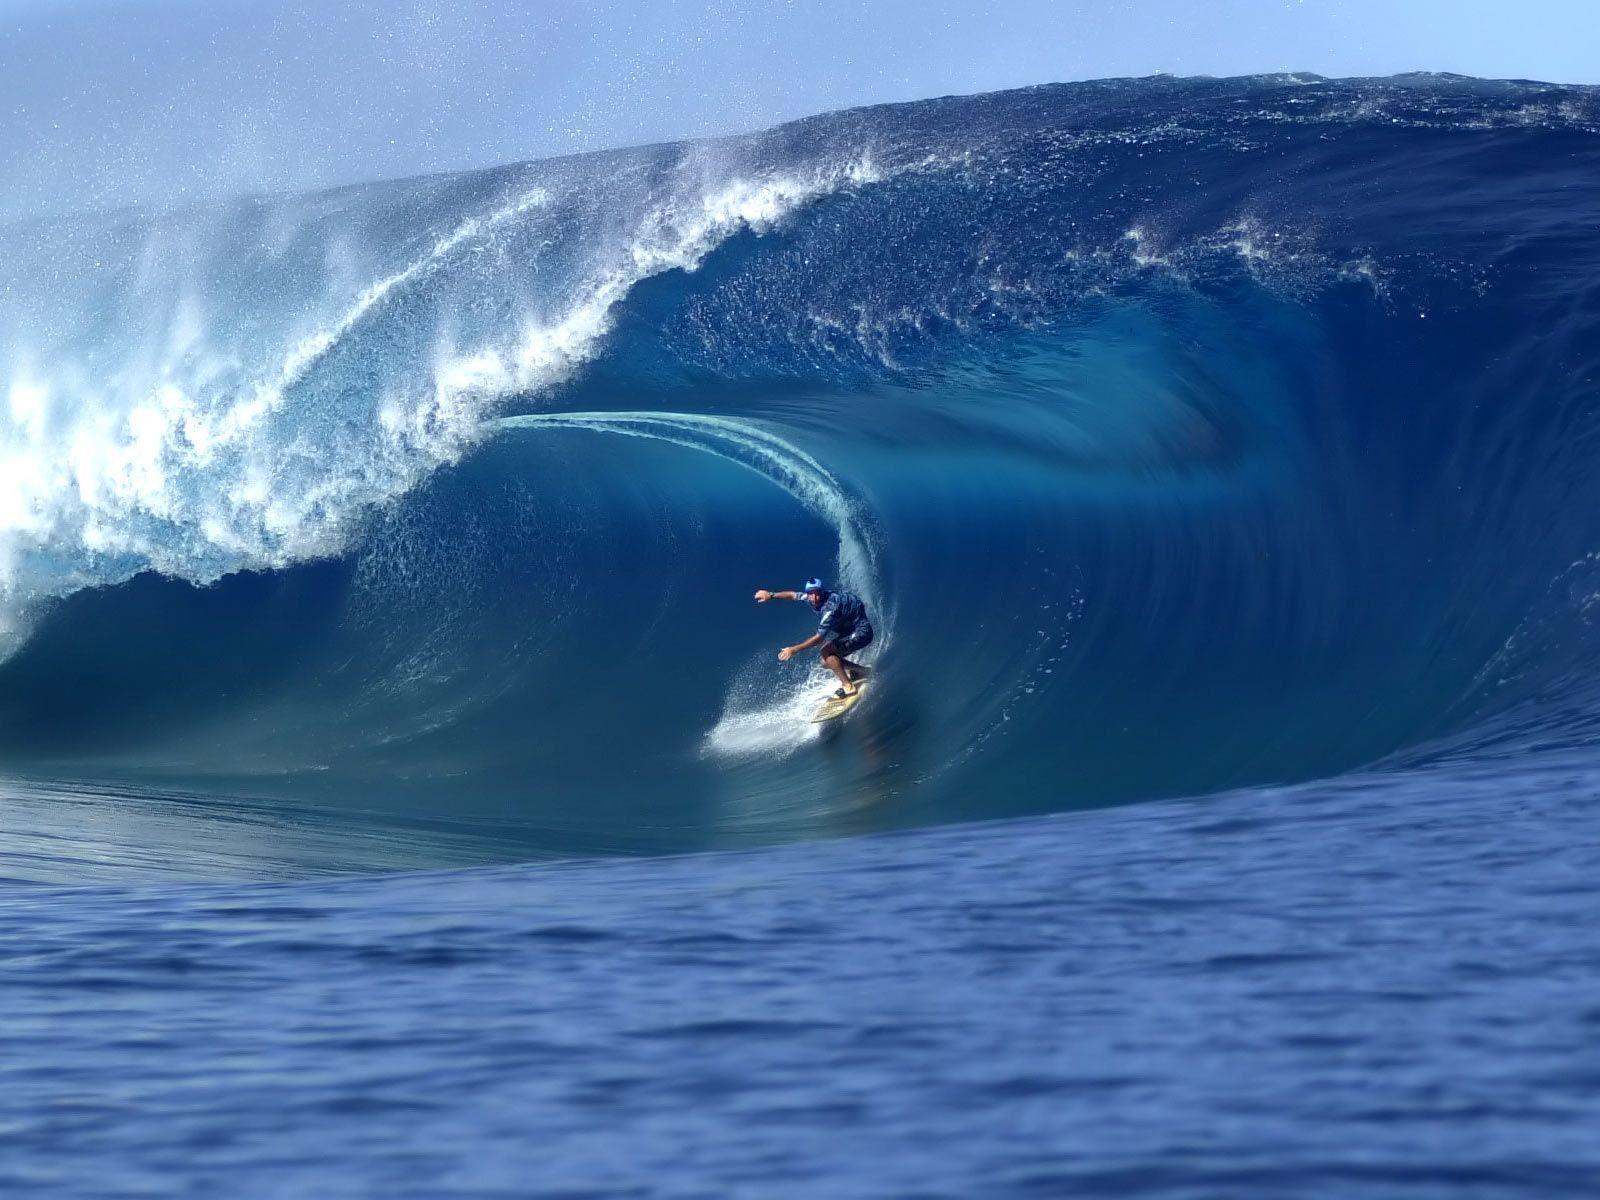 Desktop Wallpaper · Gallery · Sports · Surfing Hawaii. Free